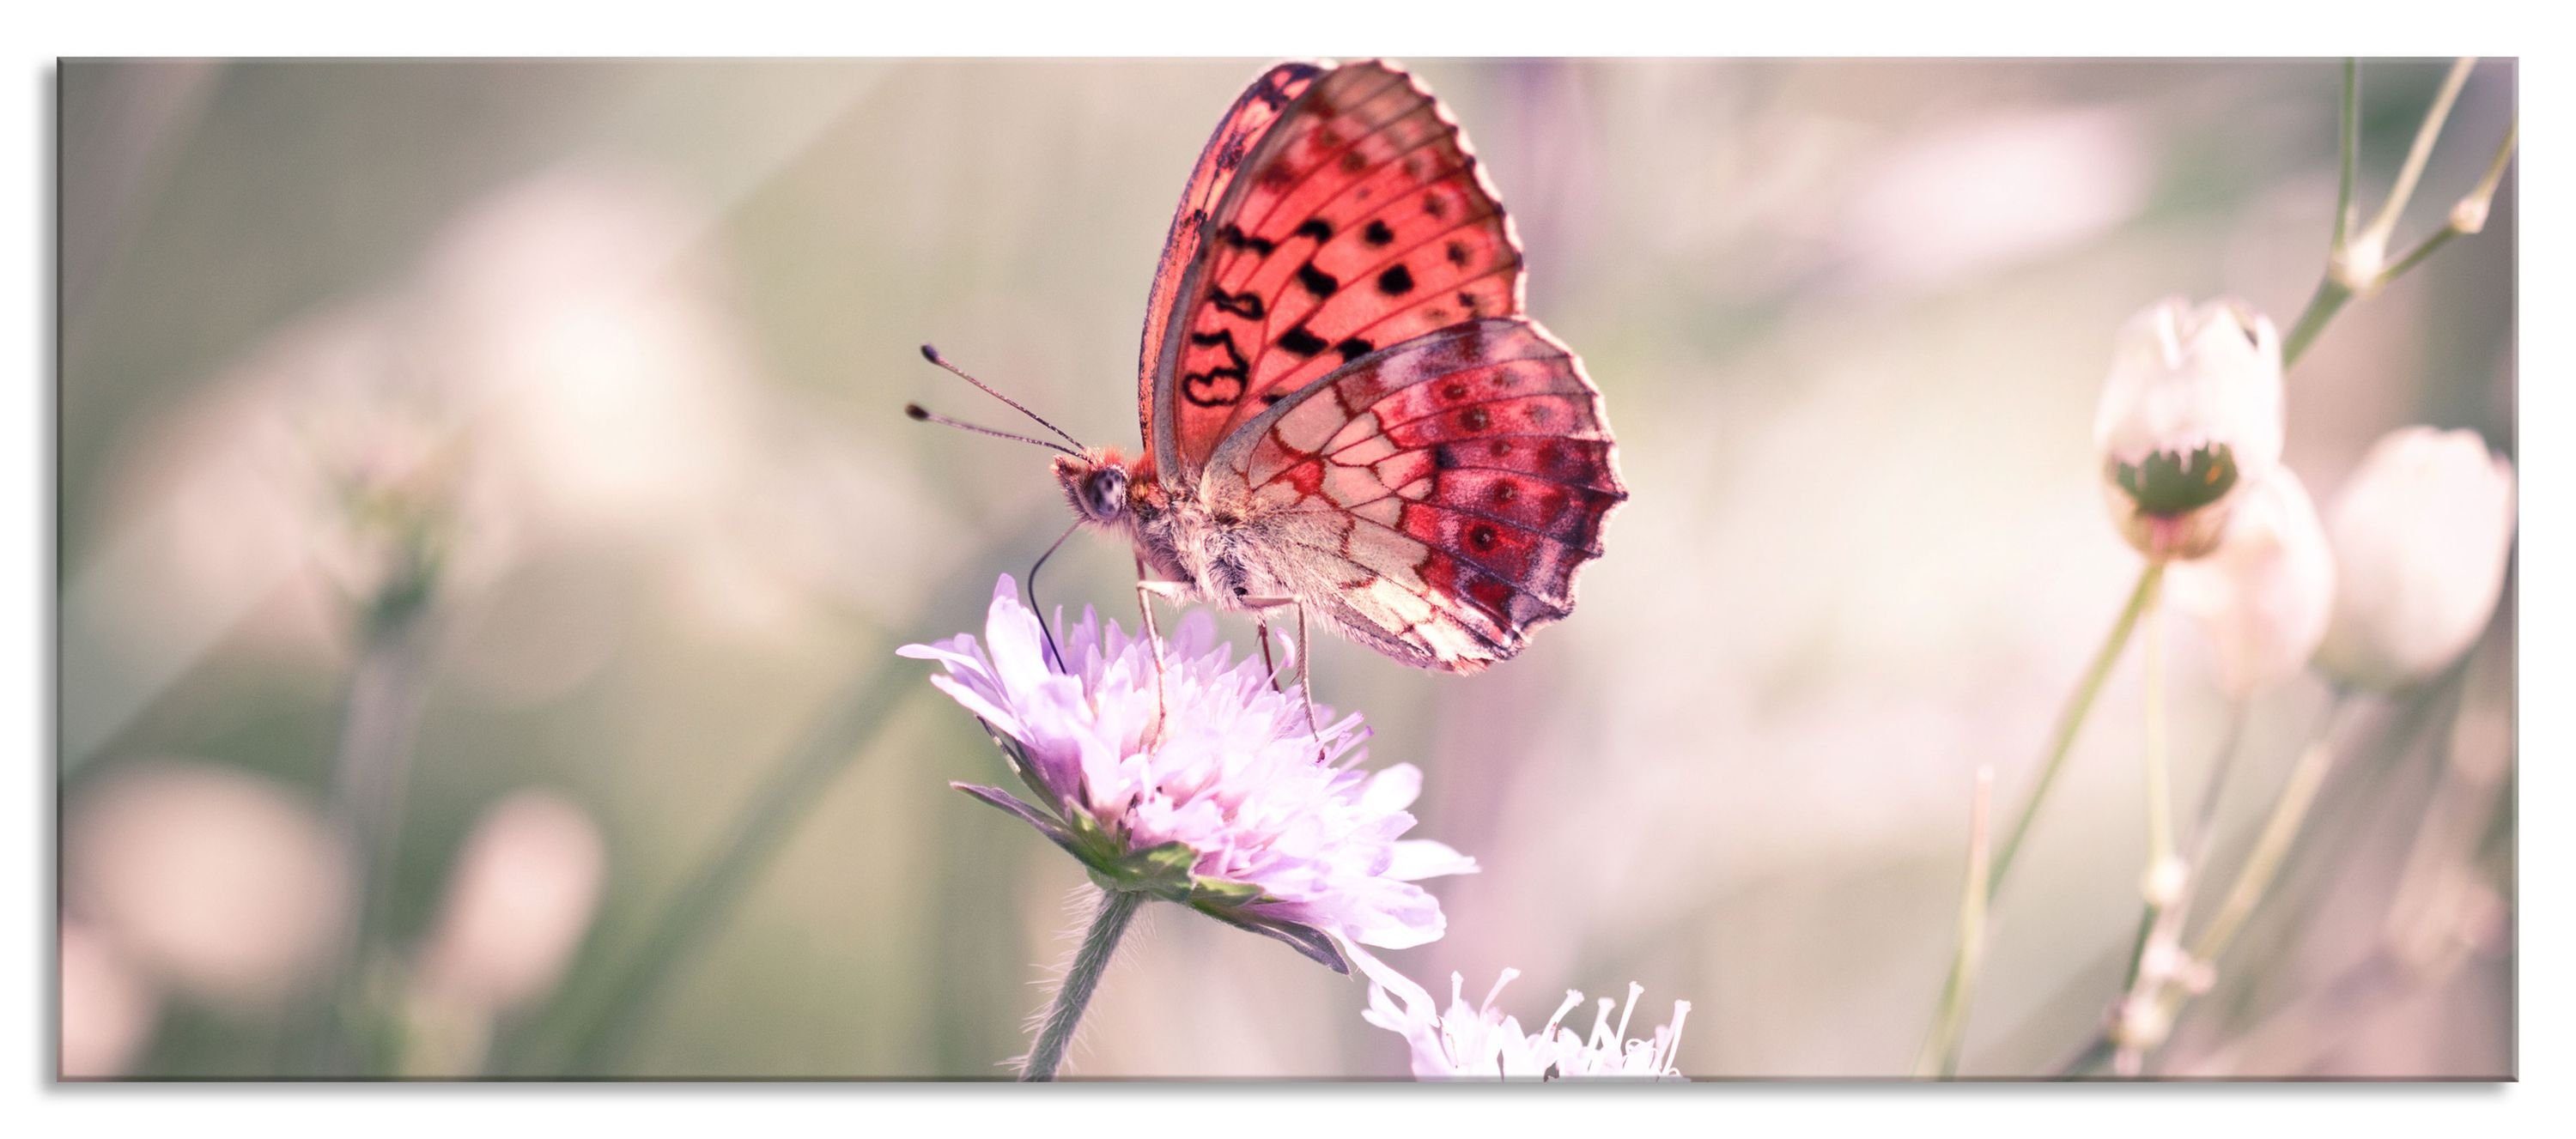 Pixxprint Glasbild Bezaubernder Schmetterling, Bezaubernder Schmetterling (1 St), Glasbild aus Echtglas, inkl. Aufhängungen und Abstandshalter